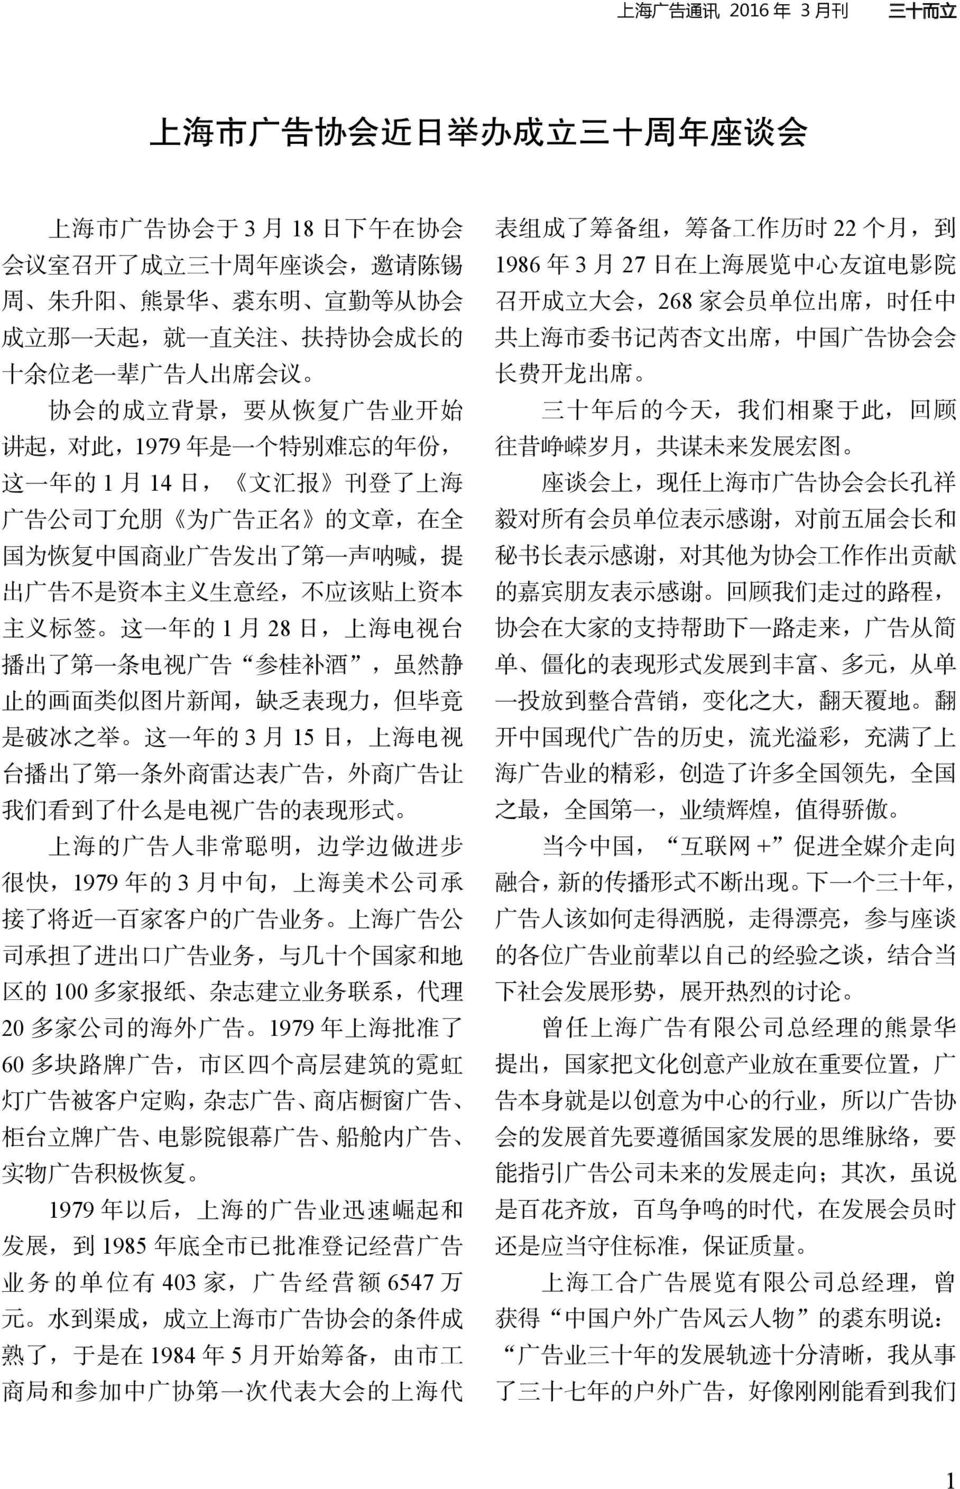 出 了 第 一 声 呐 喊, 提 出 广 告 不 是 资 本 主 义 生 意 经, 不 应 该 贴 上 资 本 主 义 标 签 这 一 年 的 1 月 28 日, 上 海 电 视 台 播 出 了 第 一 条 电 视 广 告 参 桂 补 酒, 虽 然 静 止 的 画 面 类 似 图 片 新 闻, 缺 乏 表 现 力, 但 毕 竟 是 破 冰 之 举 这 一 年 的 3 月 15 日, 上 海 电